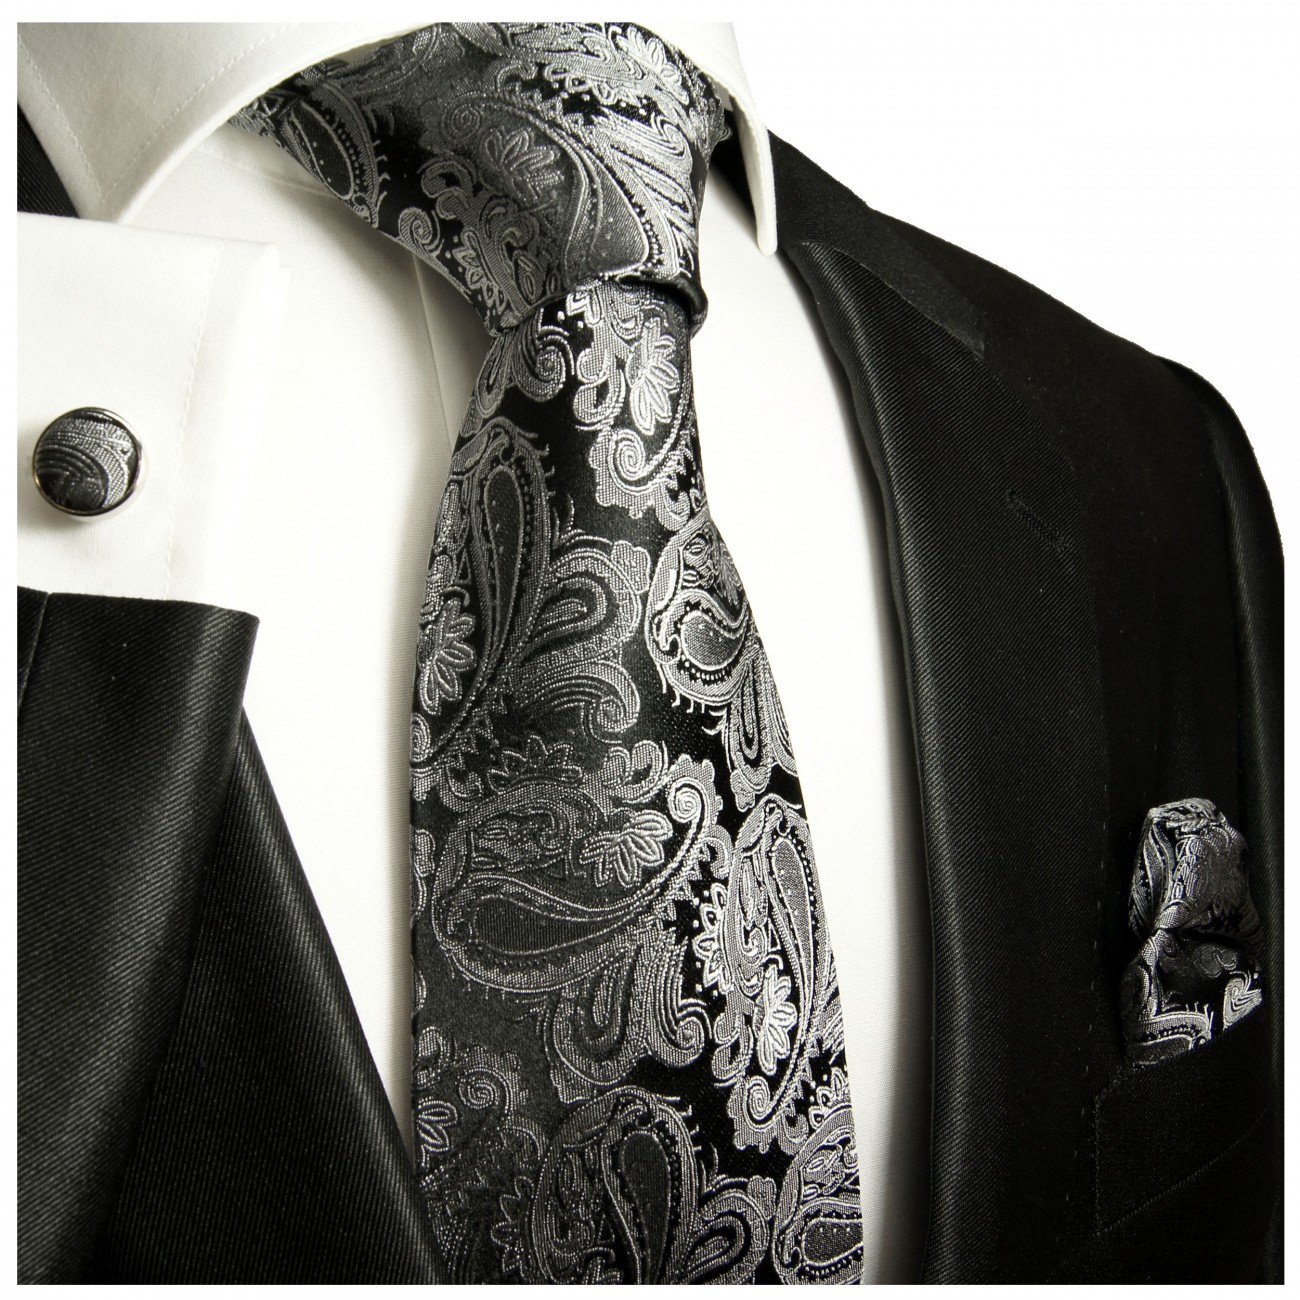 Krawatte grau schwarz paisley brokat Seide mit Einstecktuch und Manschettenknöpfe